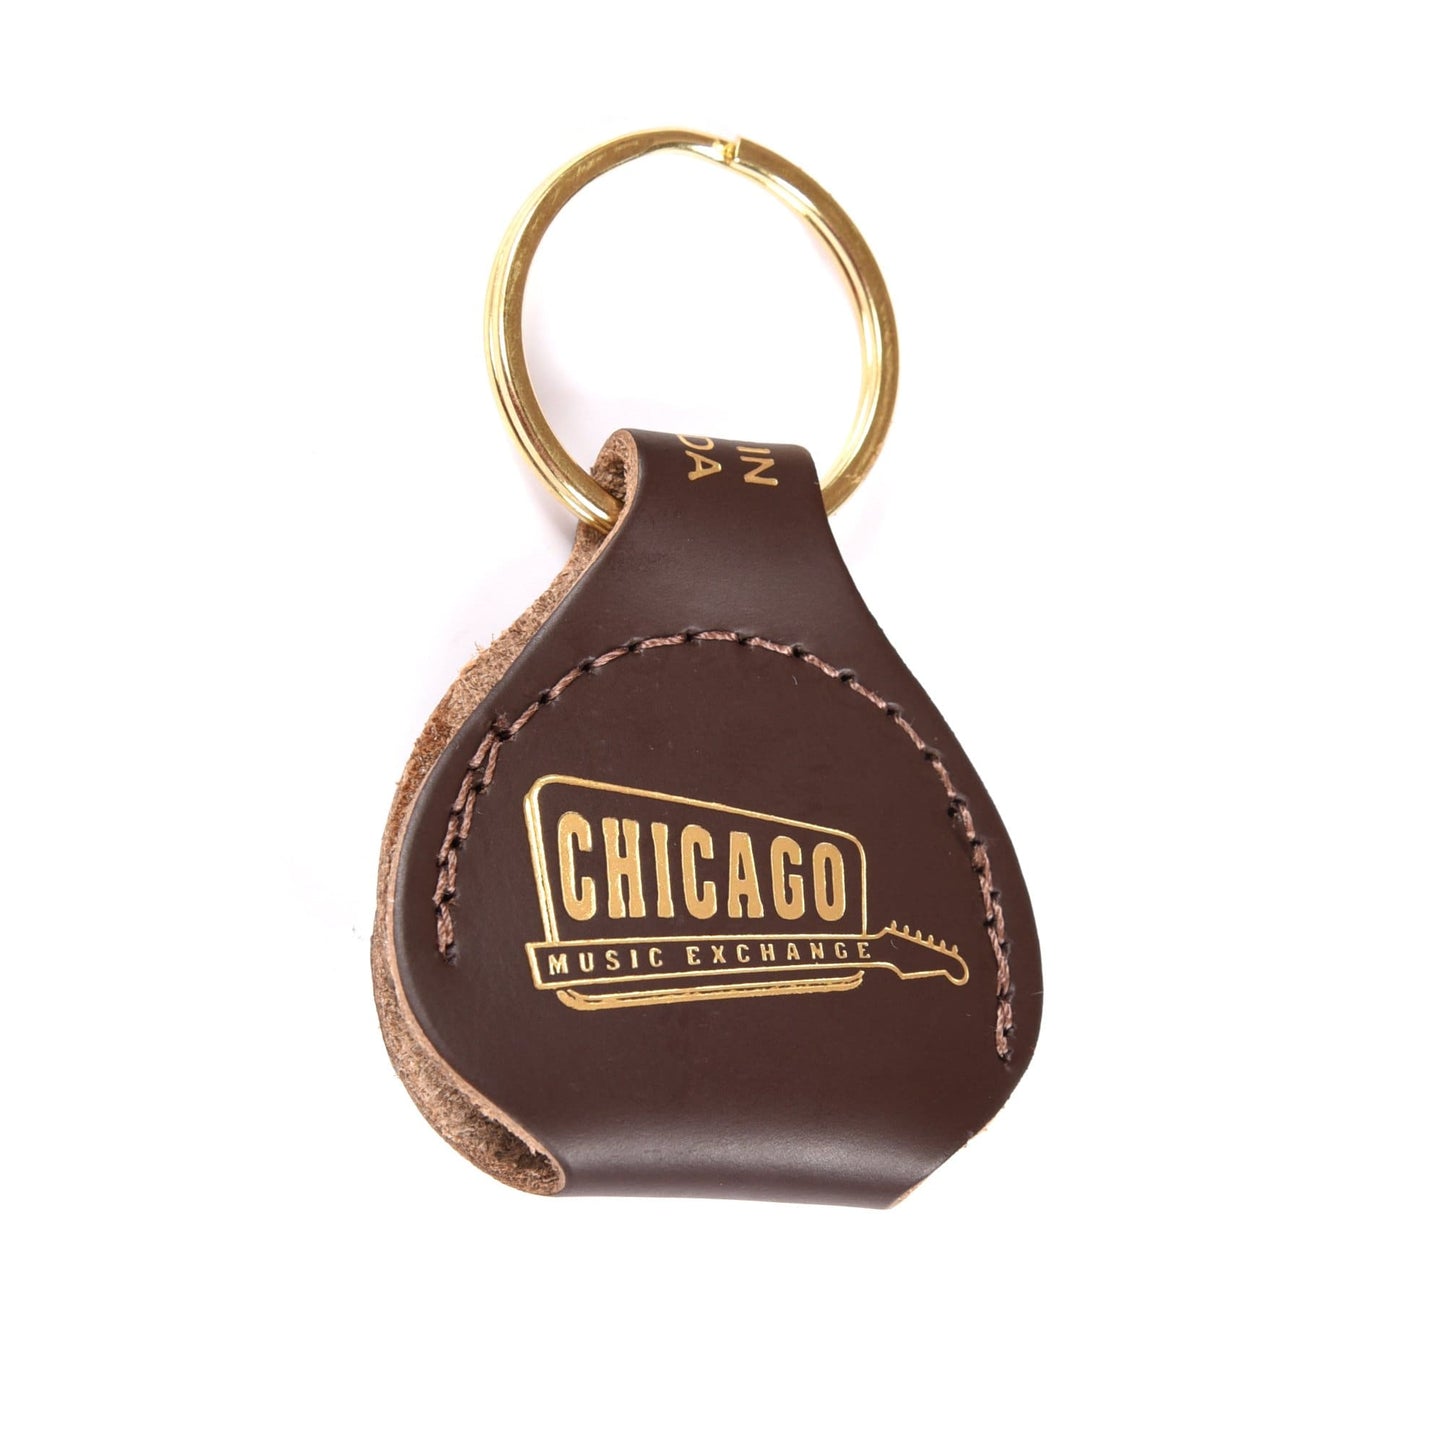 Chicago Music Exchange Leather Pick Holder Keychain Dark Brown w/Gold Foil Accessories / Merchandise